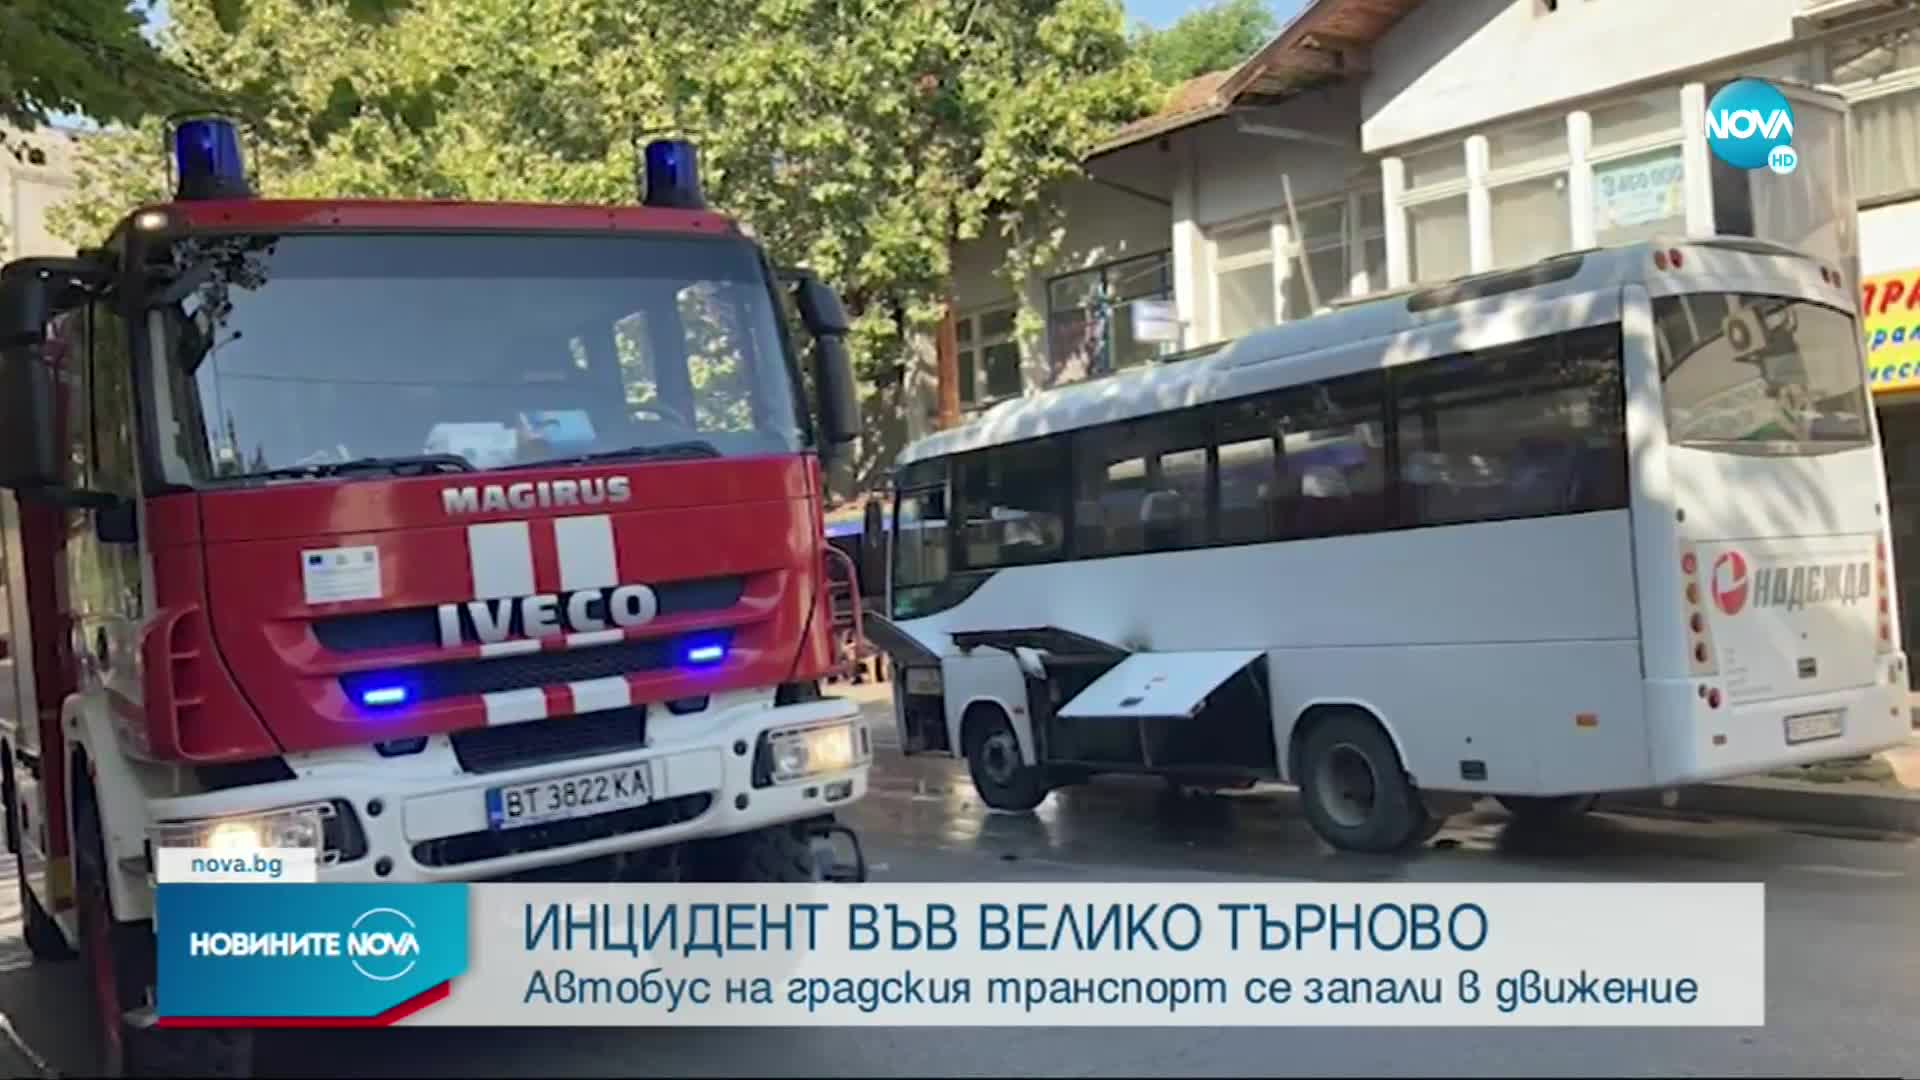 Автобус се запали в движение на улица във Велико Търново